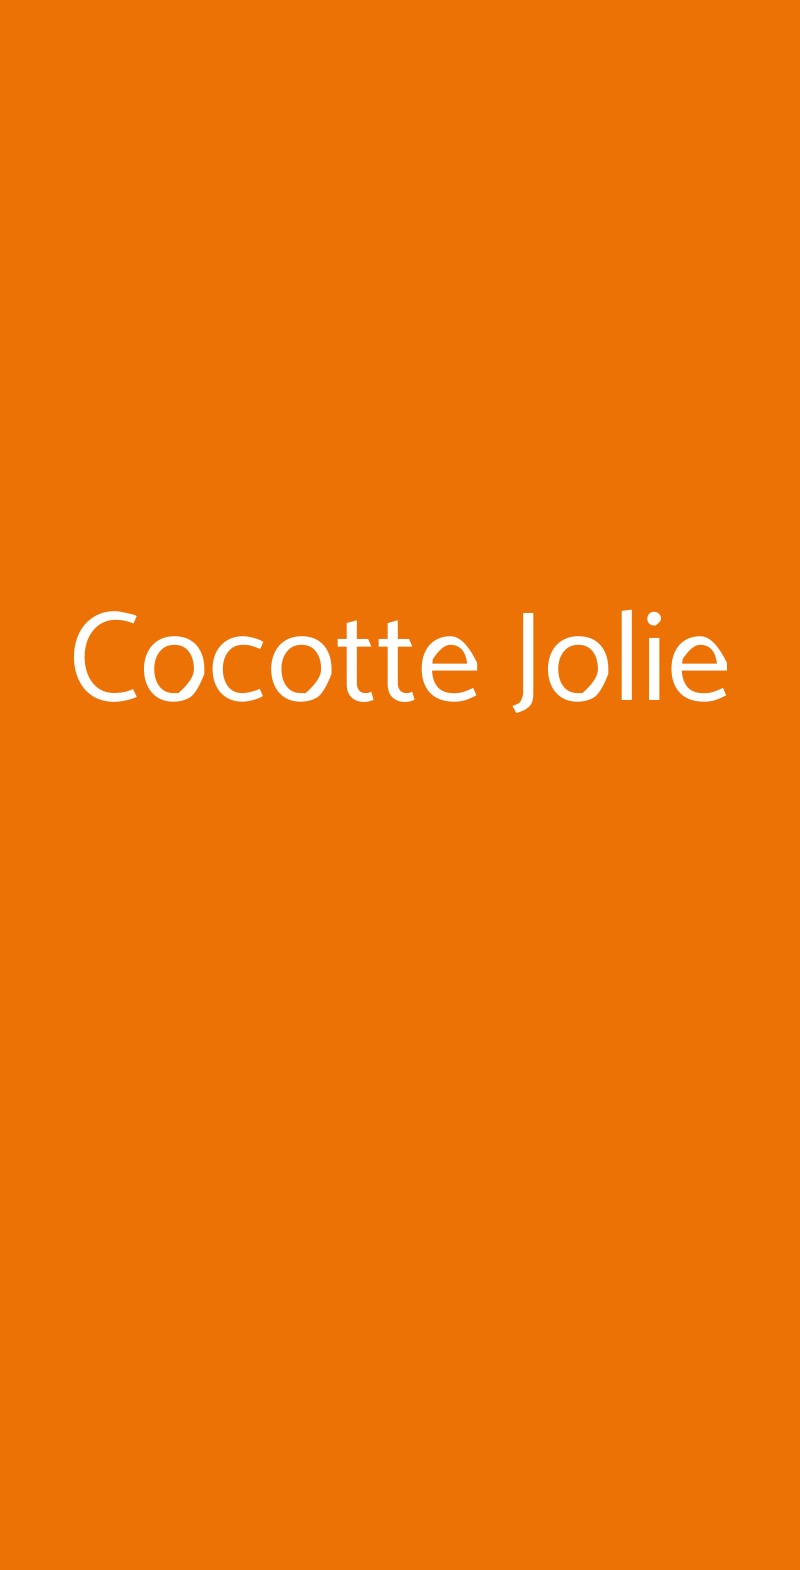 Cocotte Jolie Segrate menù 1 pagina